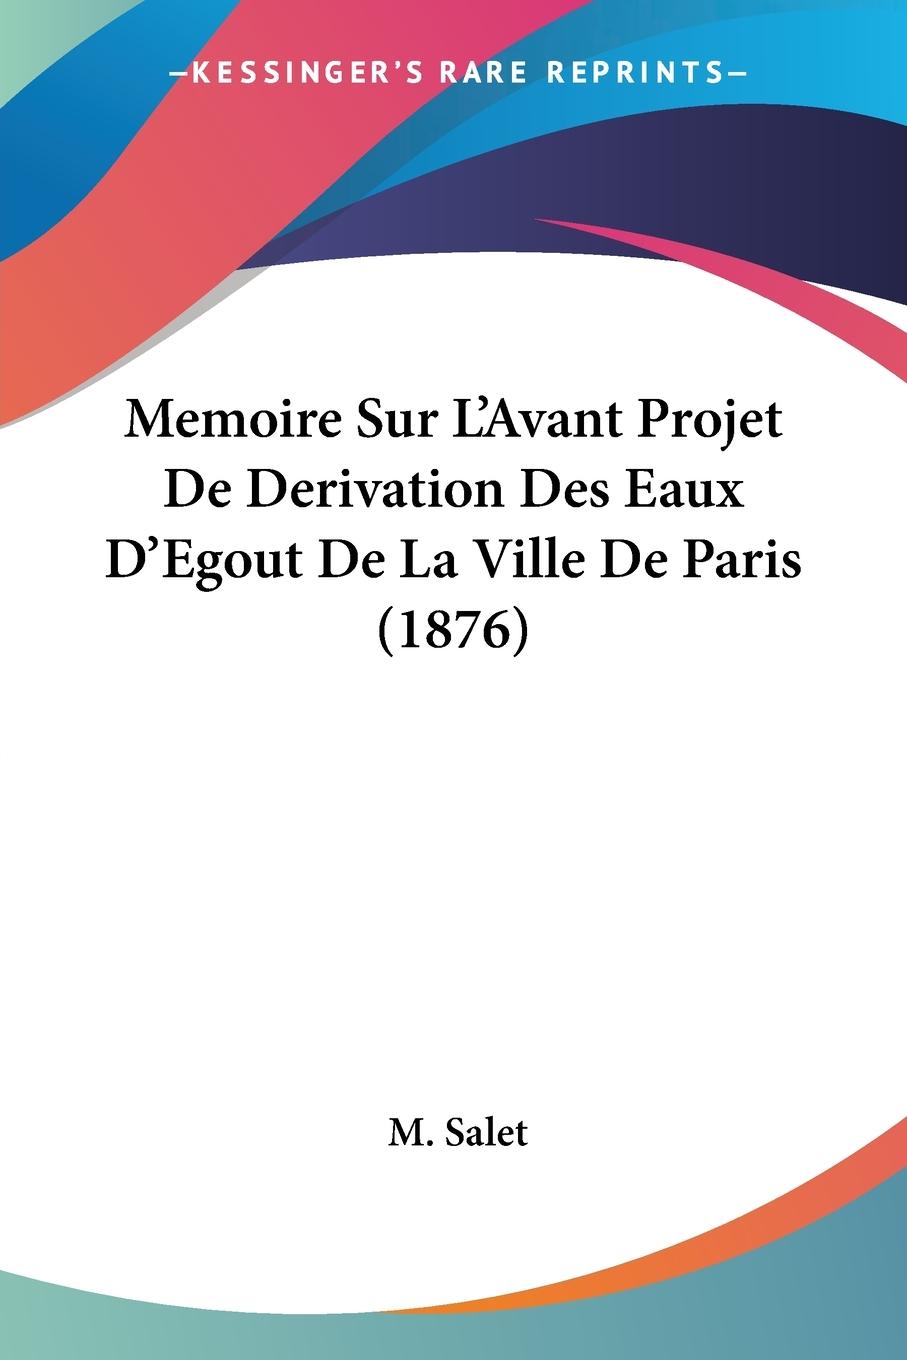 Memoire Sur L Avant Projet De Derivation Des Eaux D Egout De La Ville De Paris (1876) - Salet, M.